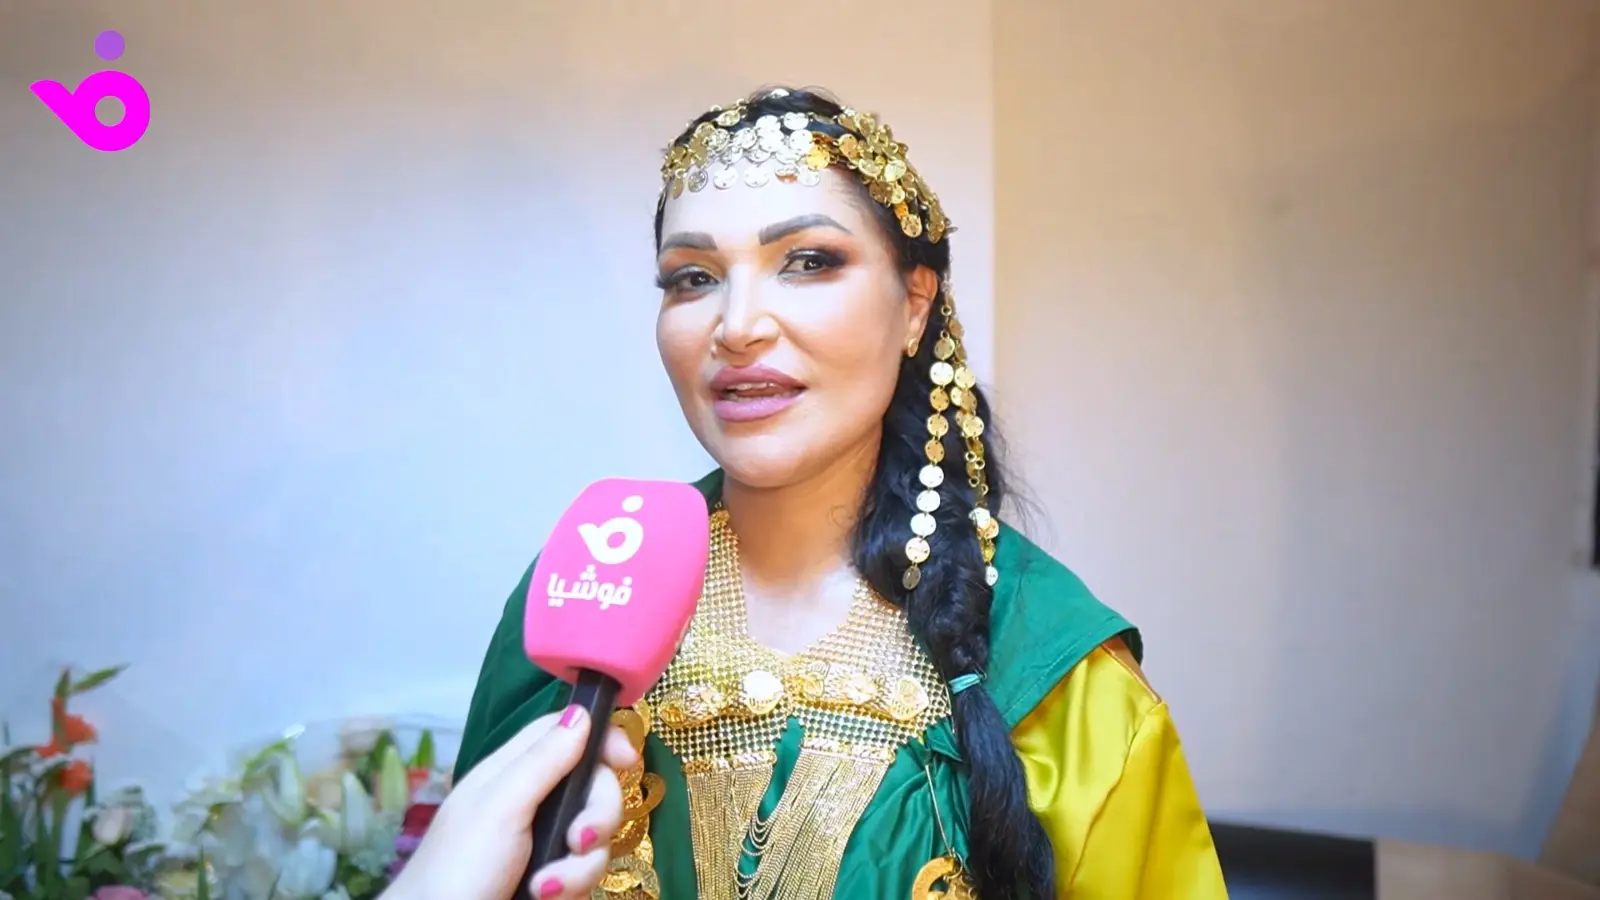 نجلاء التونسية لـ"فوشيا": اسمي لا يزال في الساحة العربية رغم الغياب